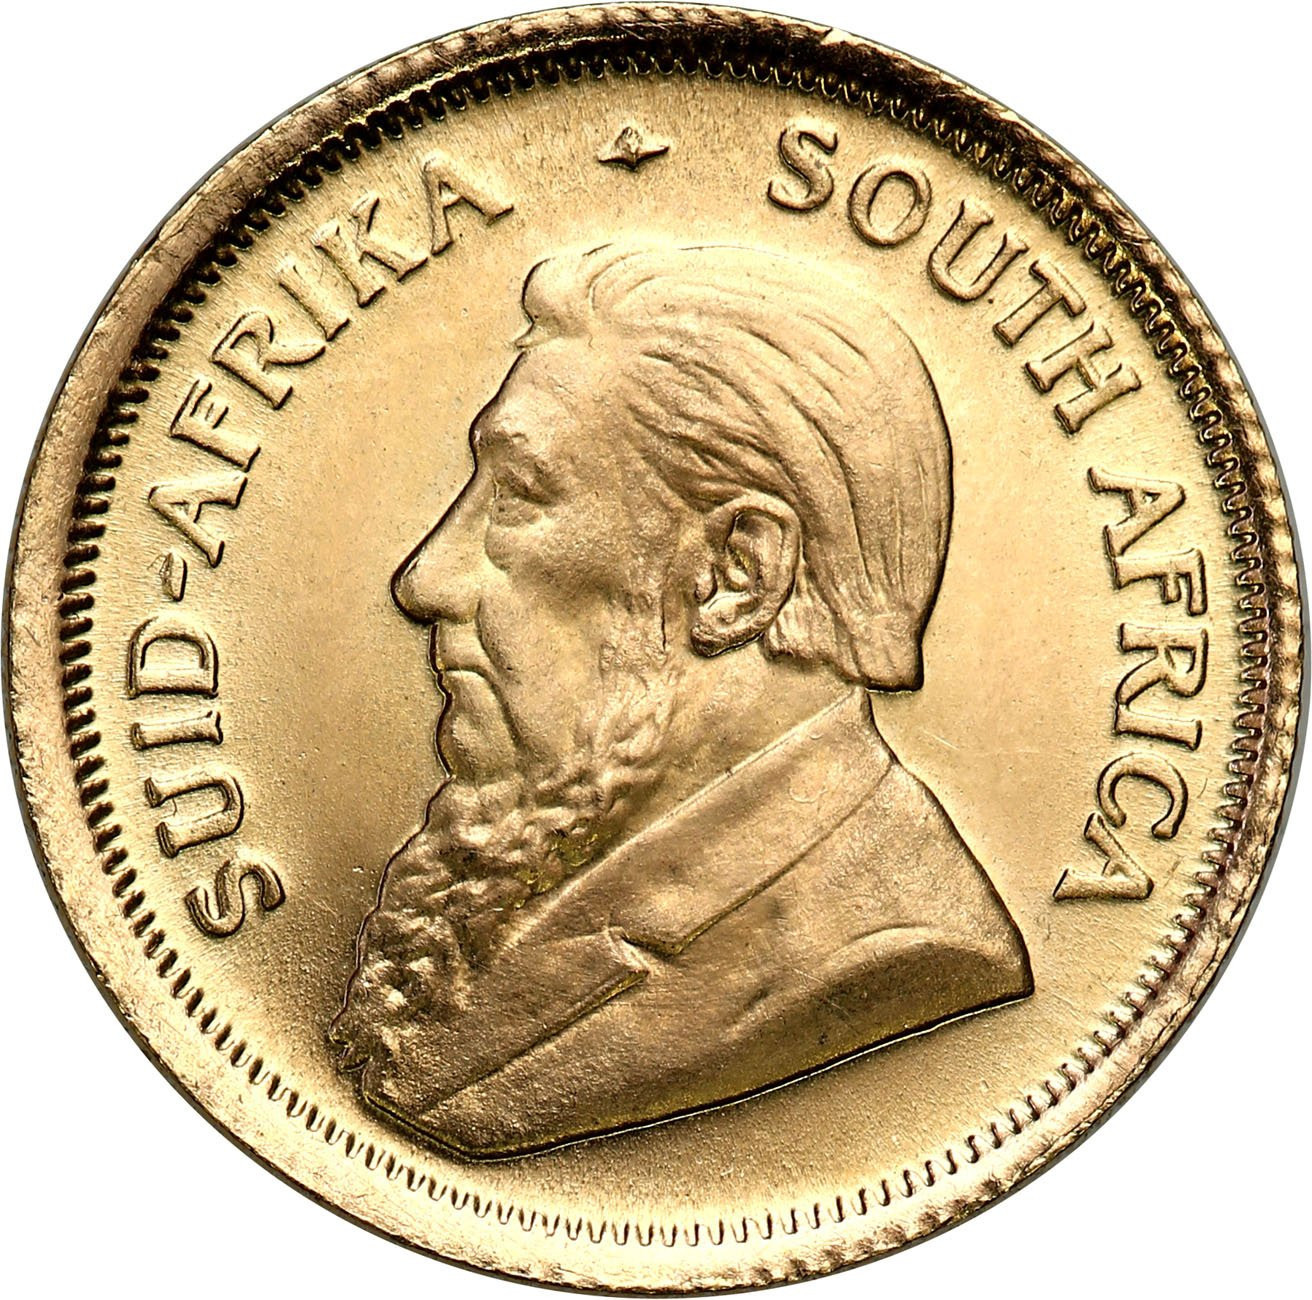 RPA. Złoty Krugerrand 1985 - 1/10 uncji złota